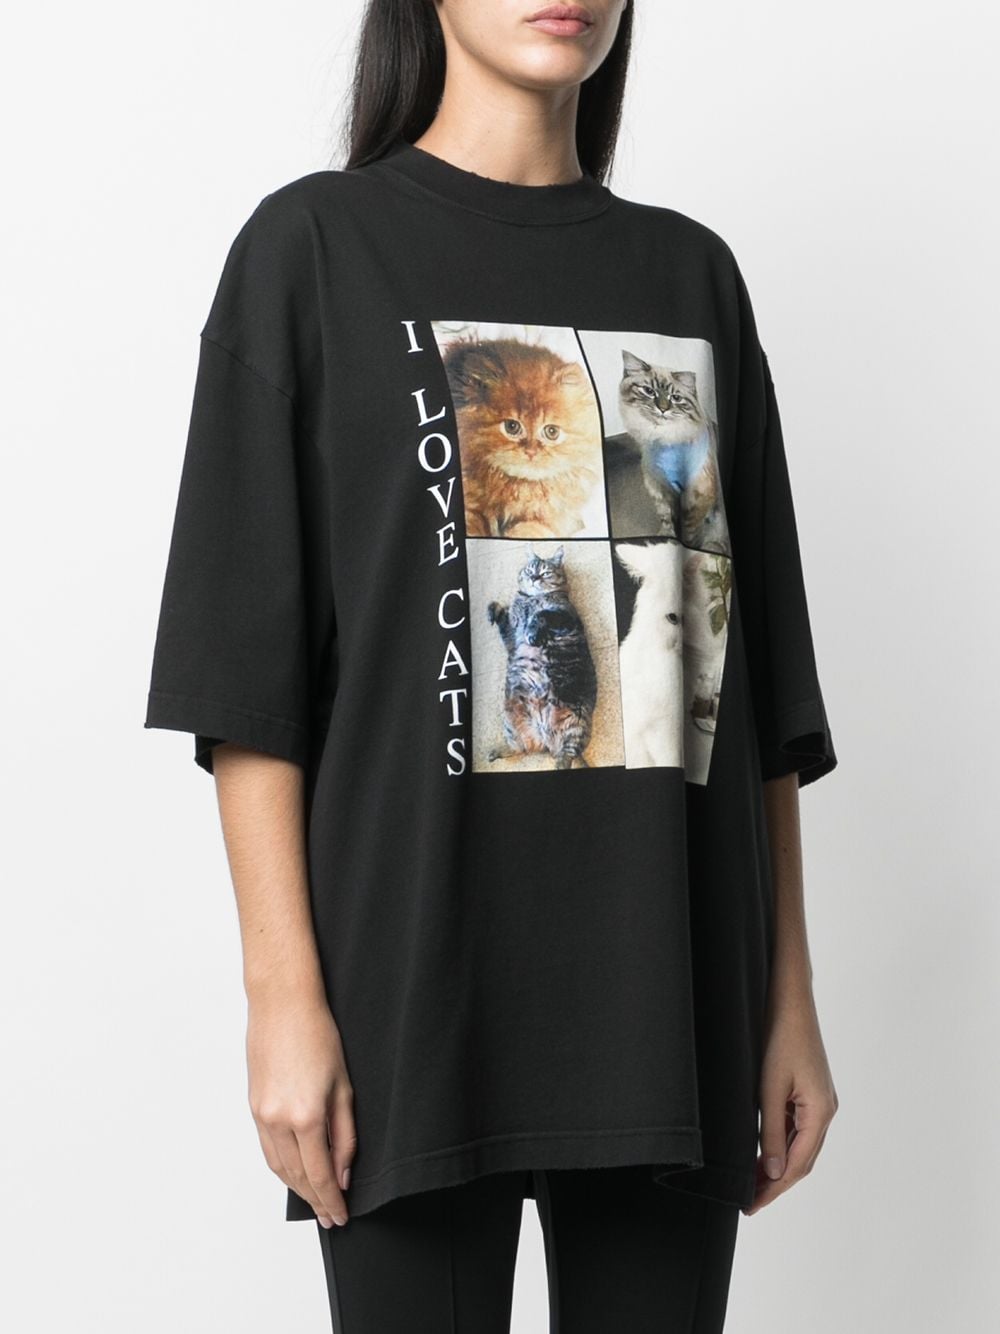 фото Balenciaga футболка с принтом i love cats